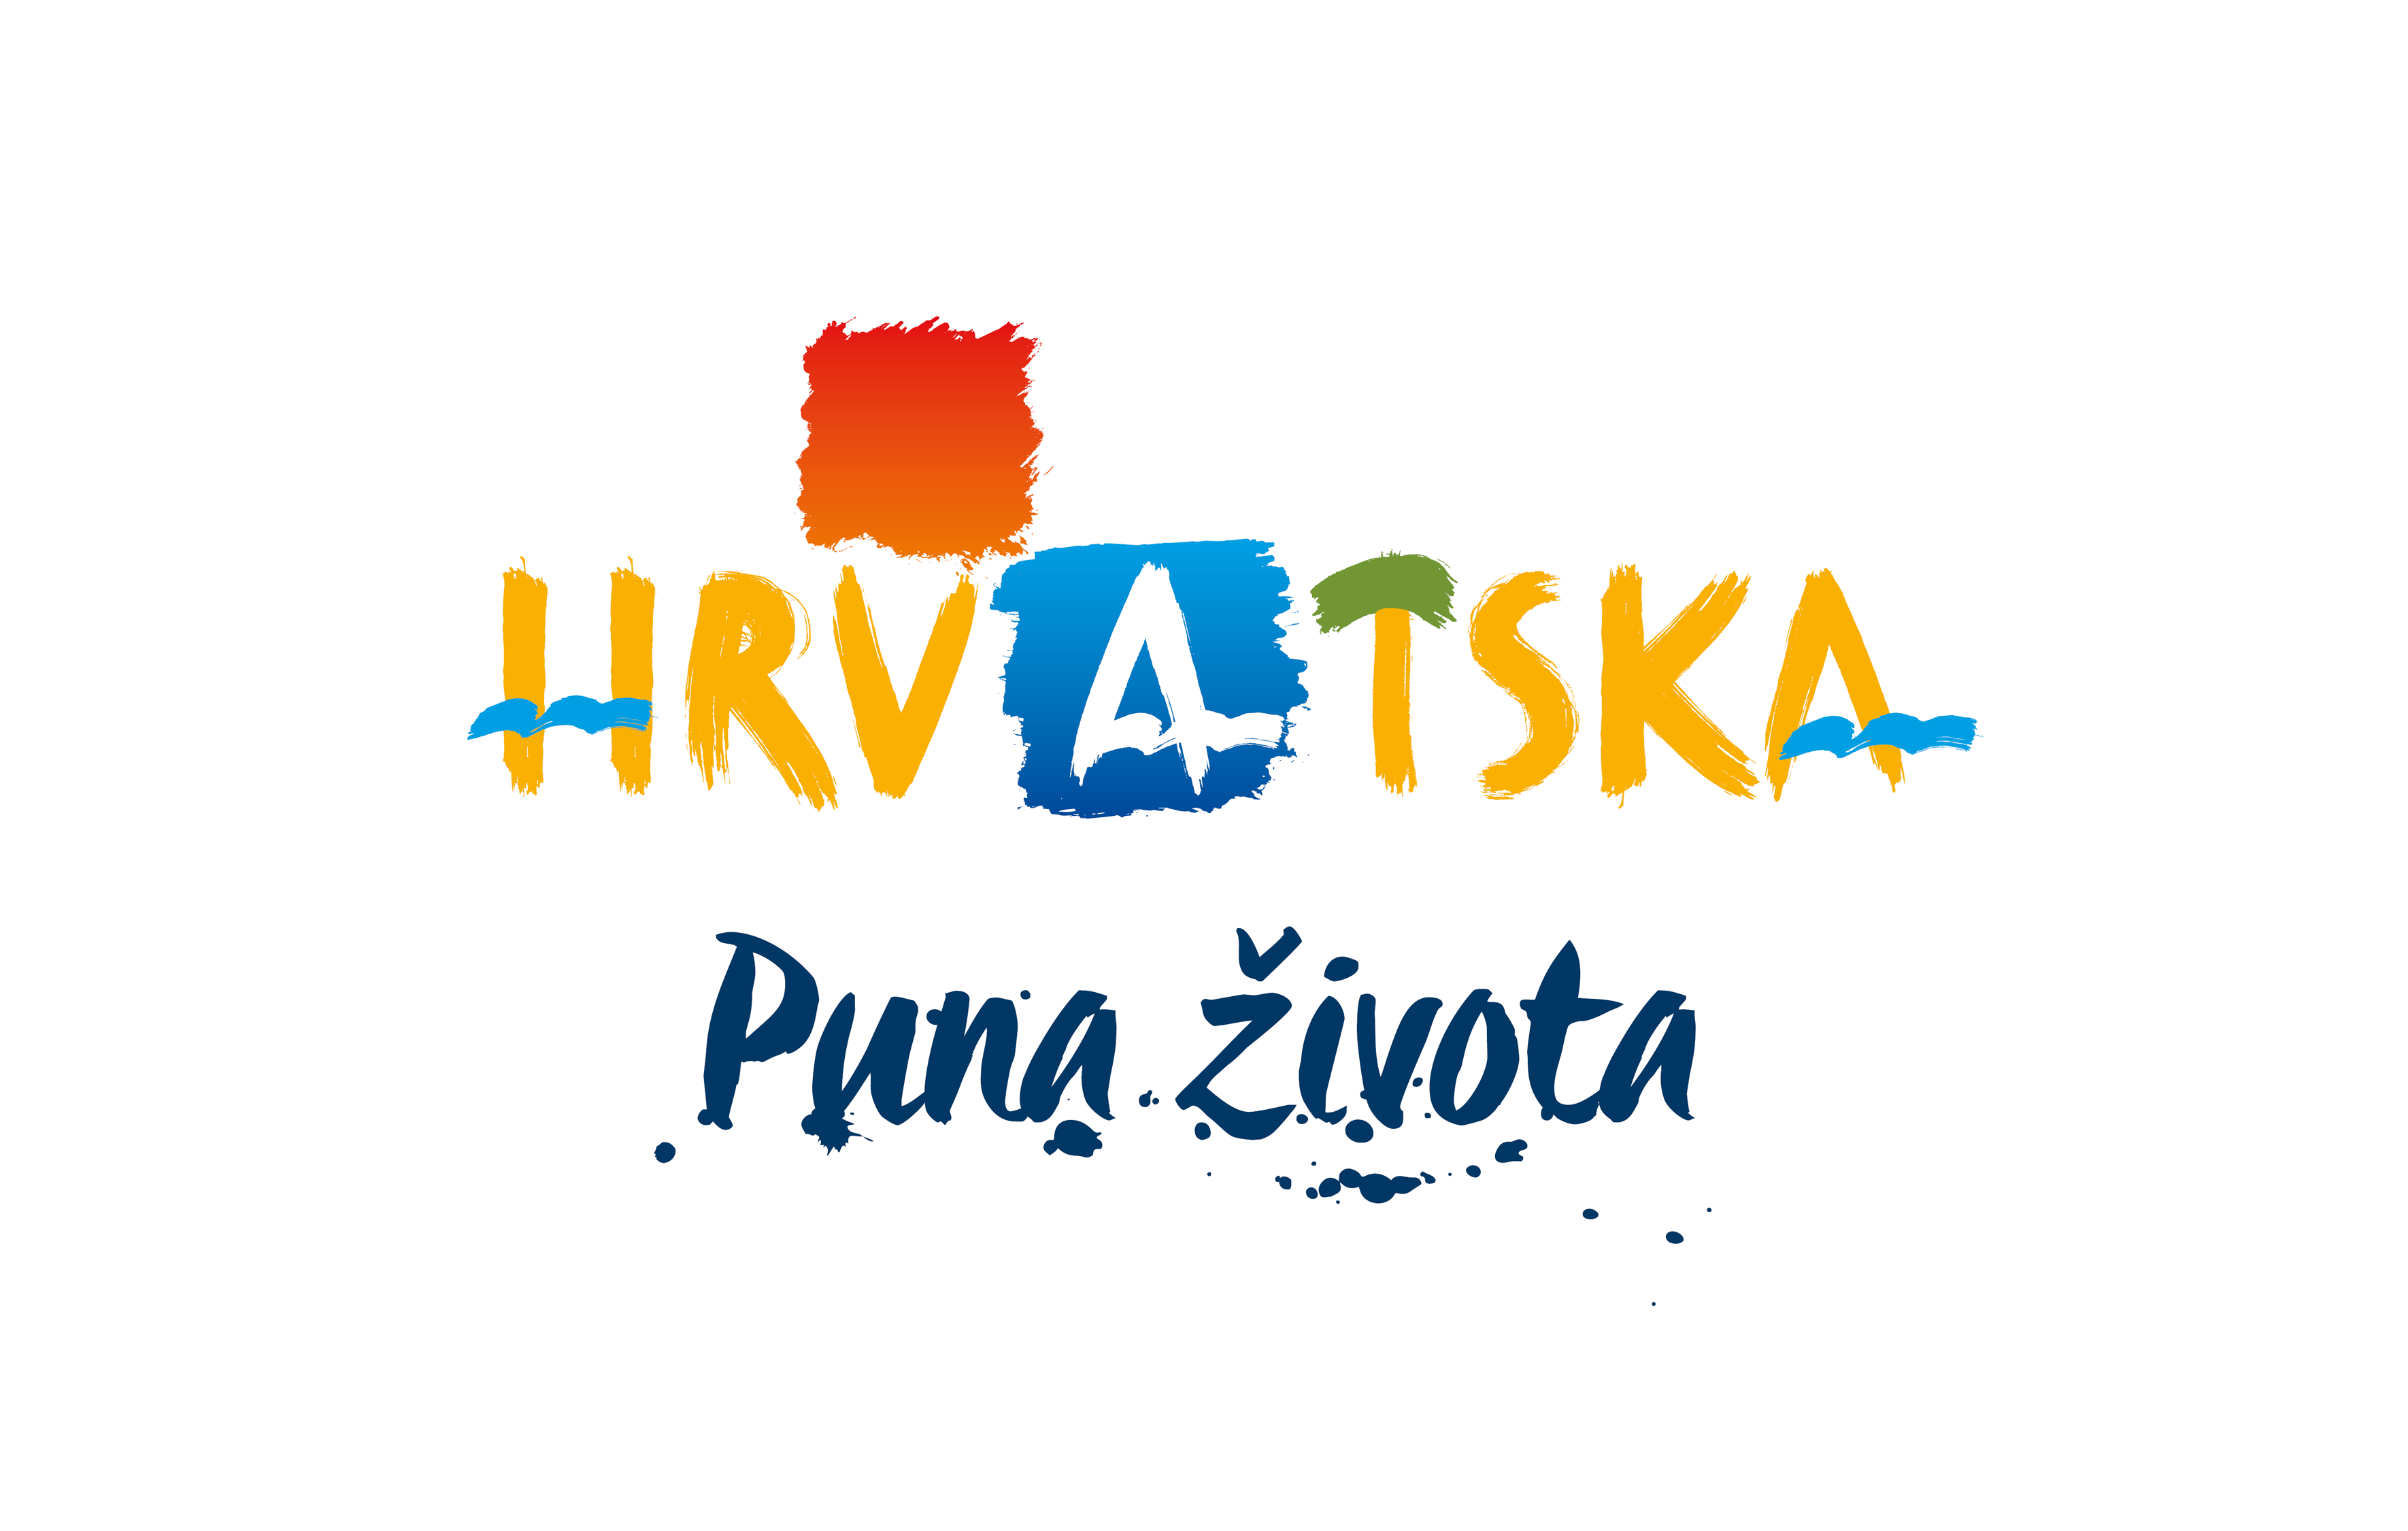 HTZ 2016 logo slogan hrvatski rgb